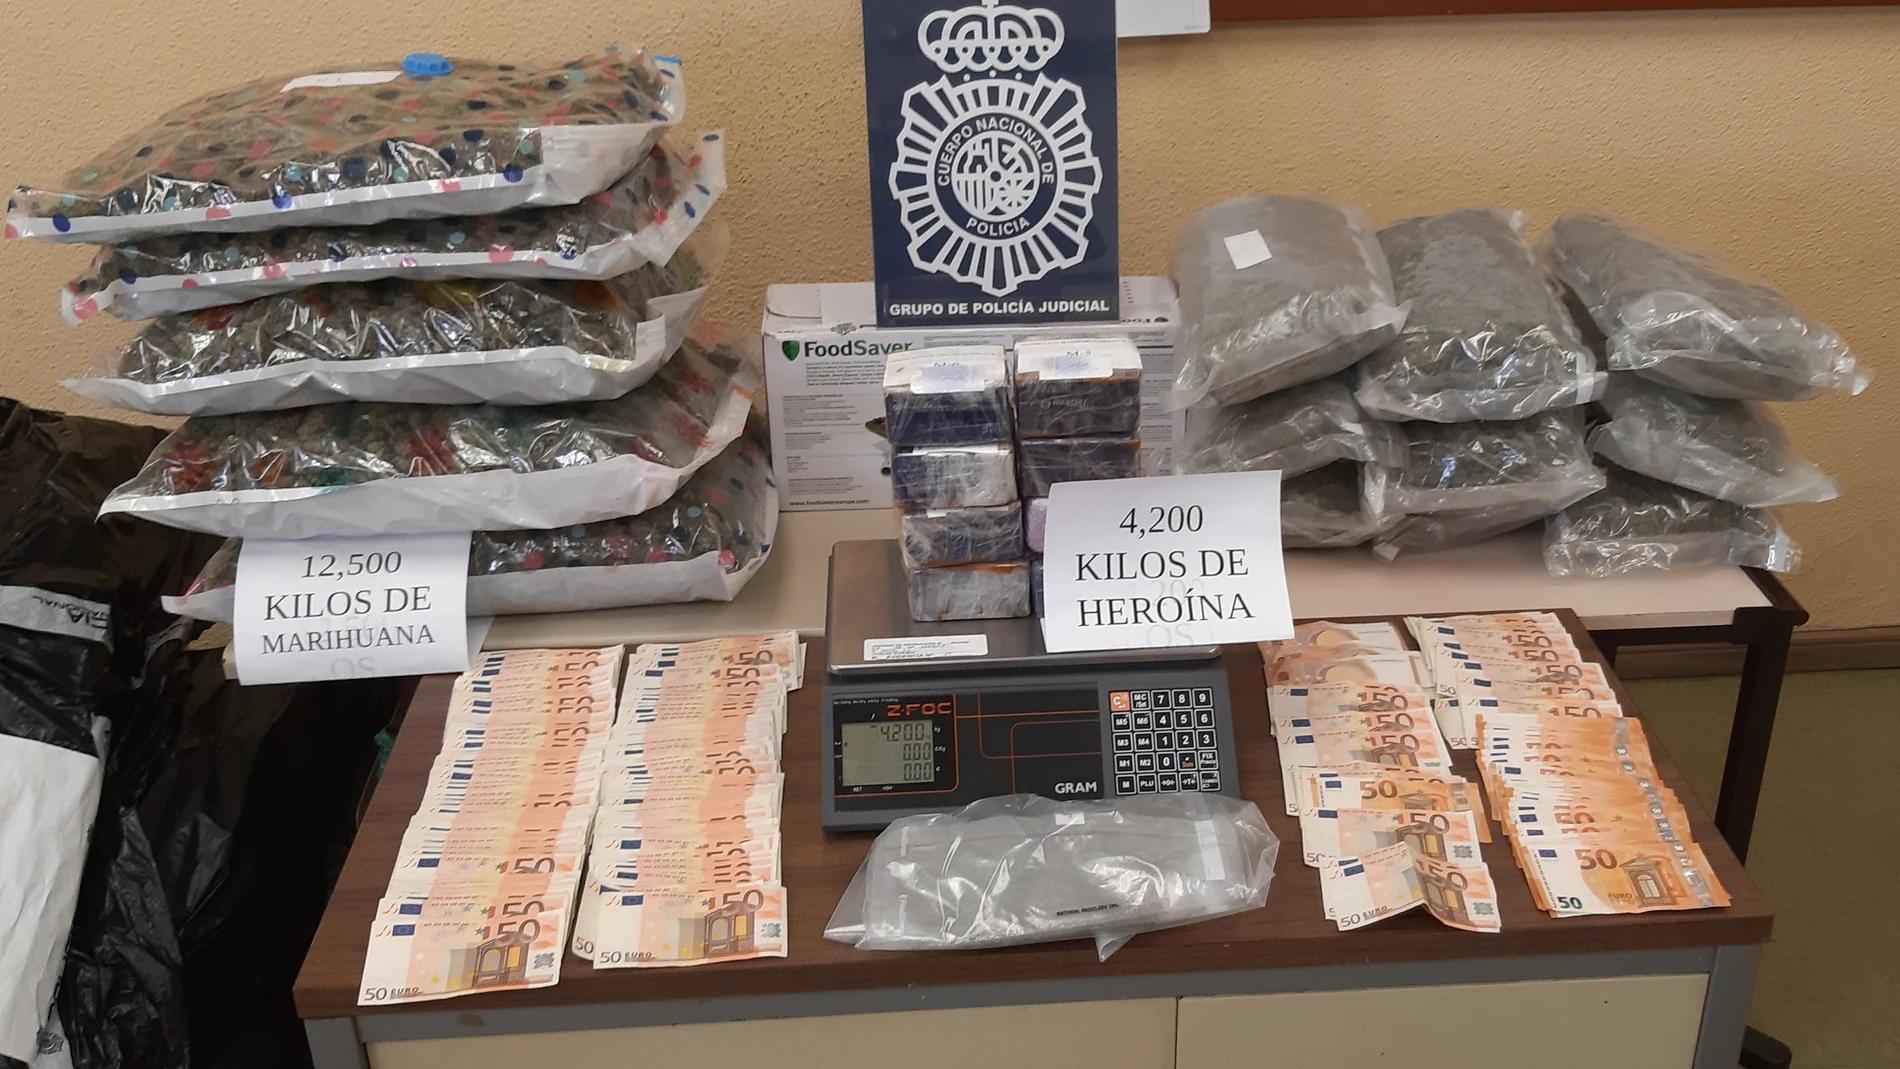 La Policía Nacional desarticula un grupo criminal dedicado a distribuir heroína en narcopisos y al cultivo indoor de marihuana